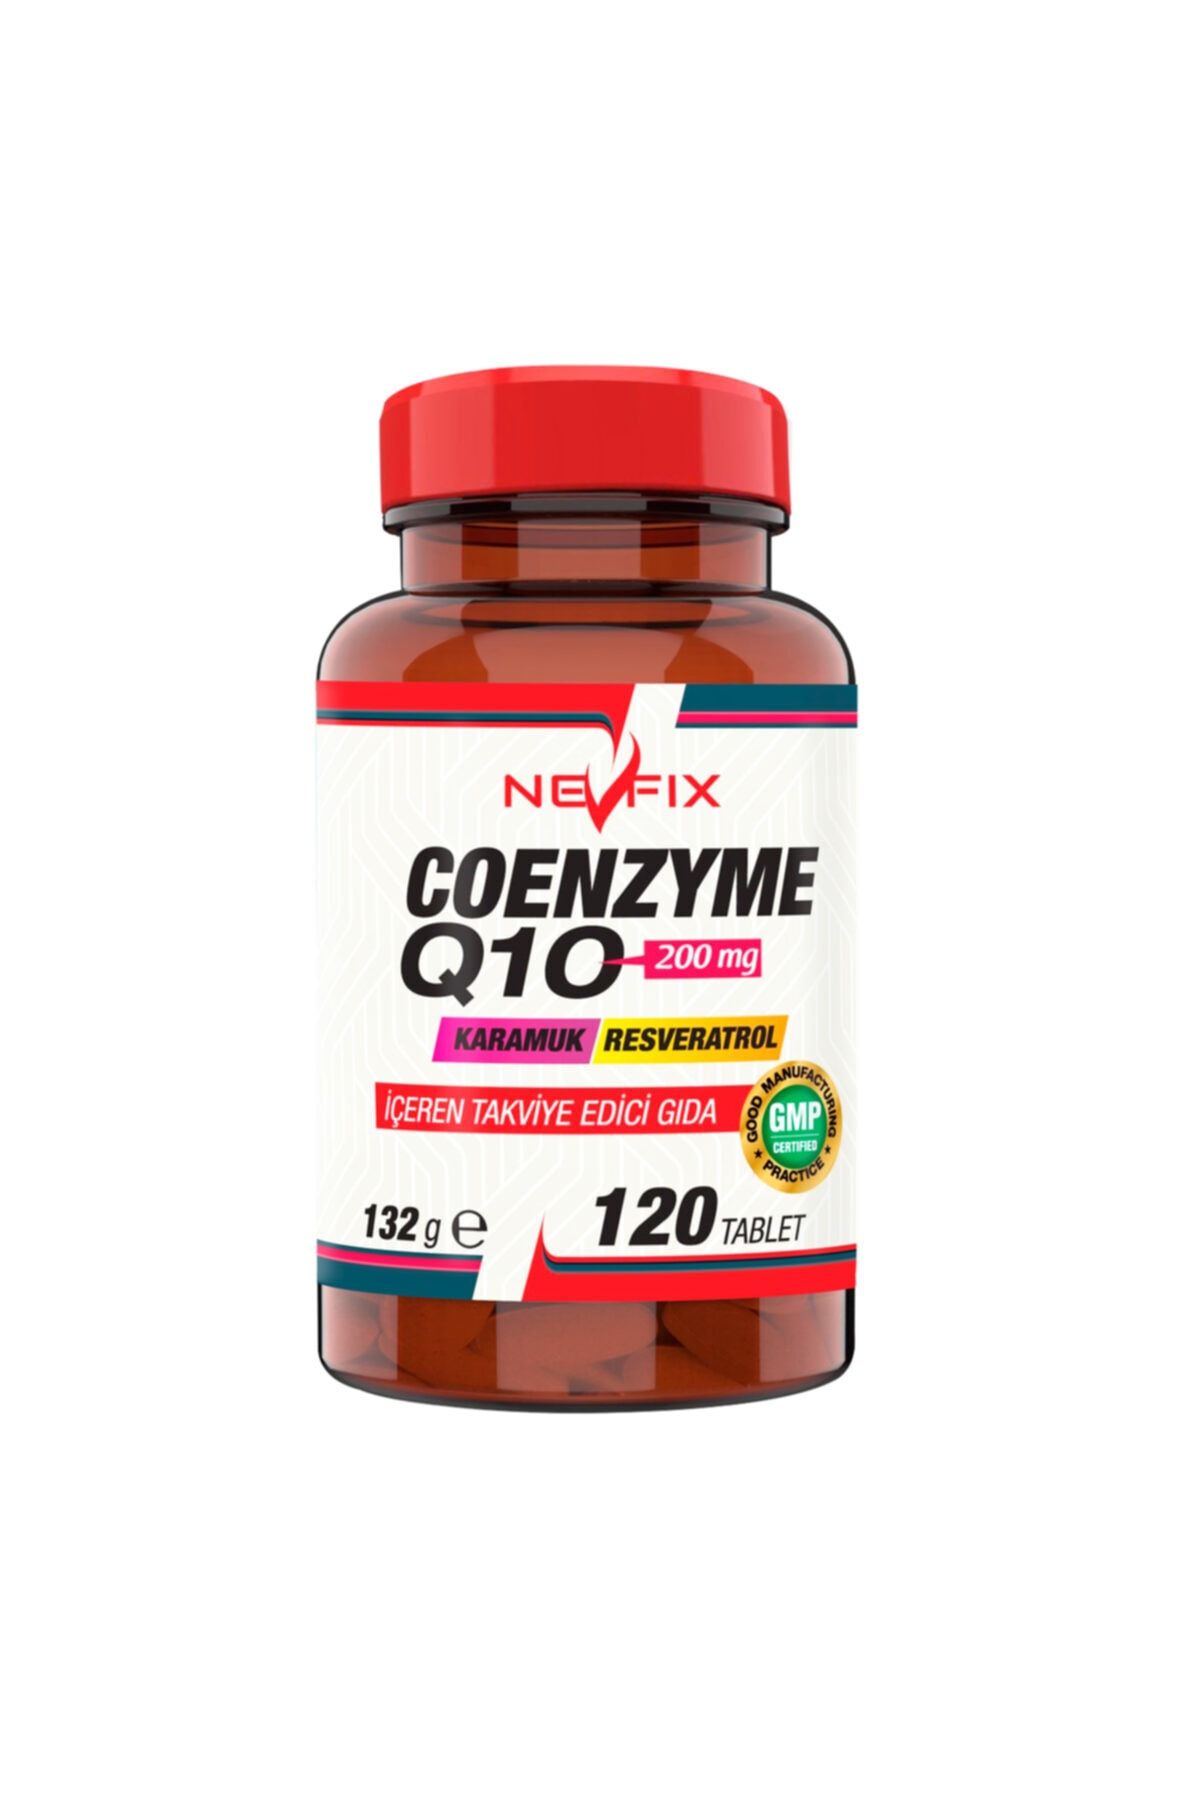 Nevfix Coenzyme Q10 200 mg